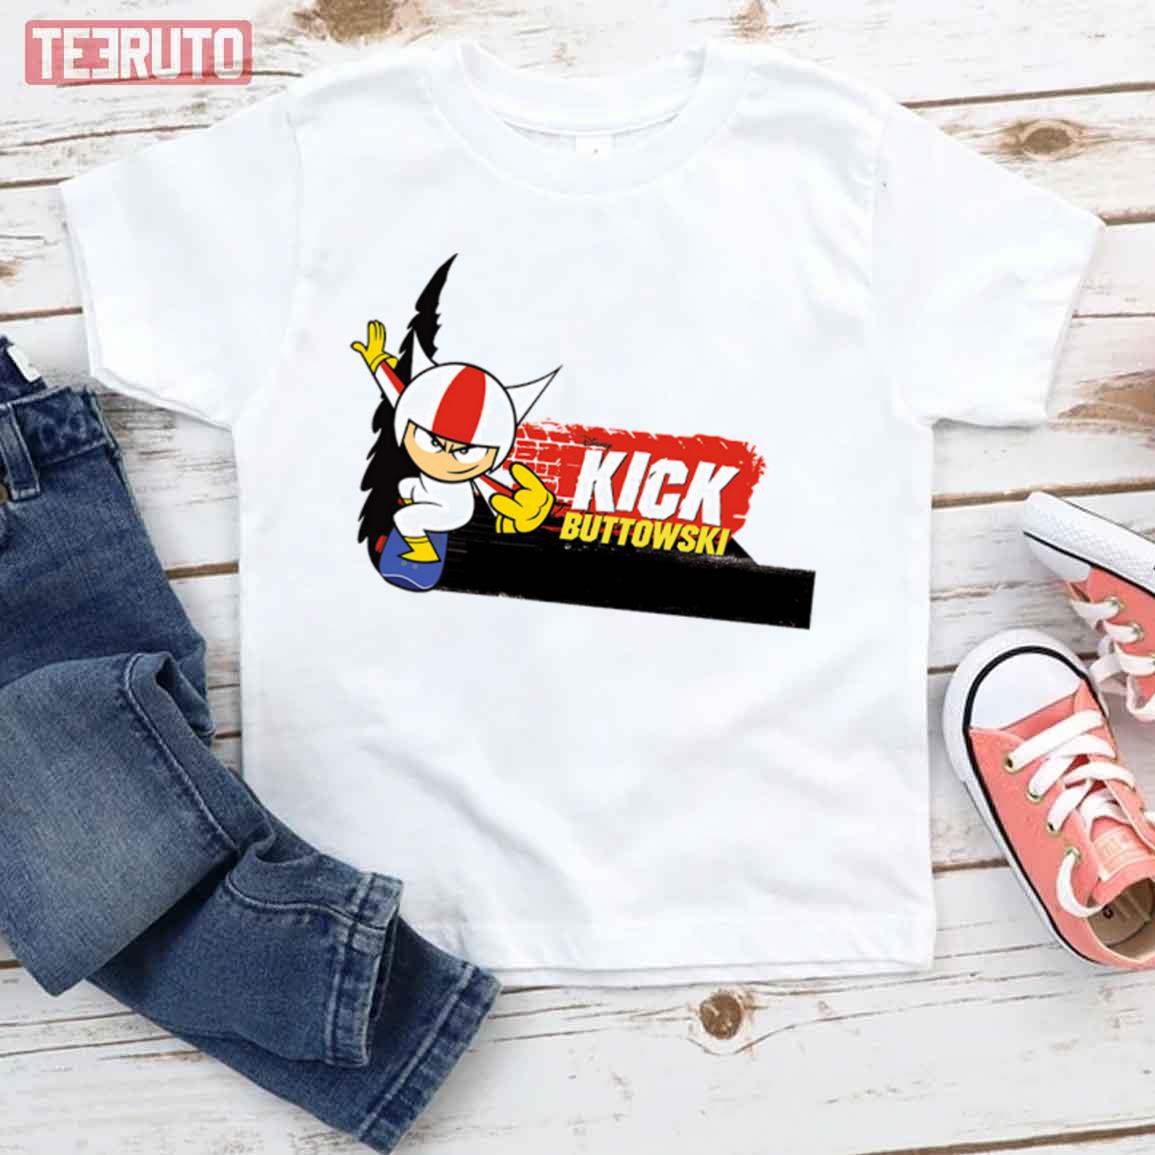 Logo Cartoon Kick Buttowski Unisex T-Shirt - Teeruto